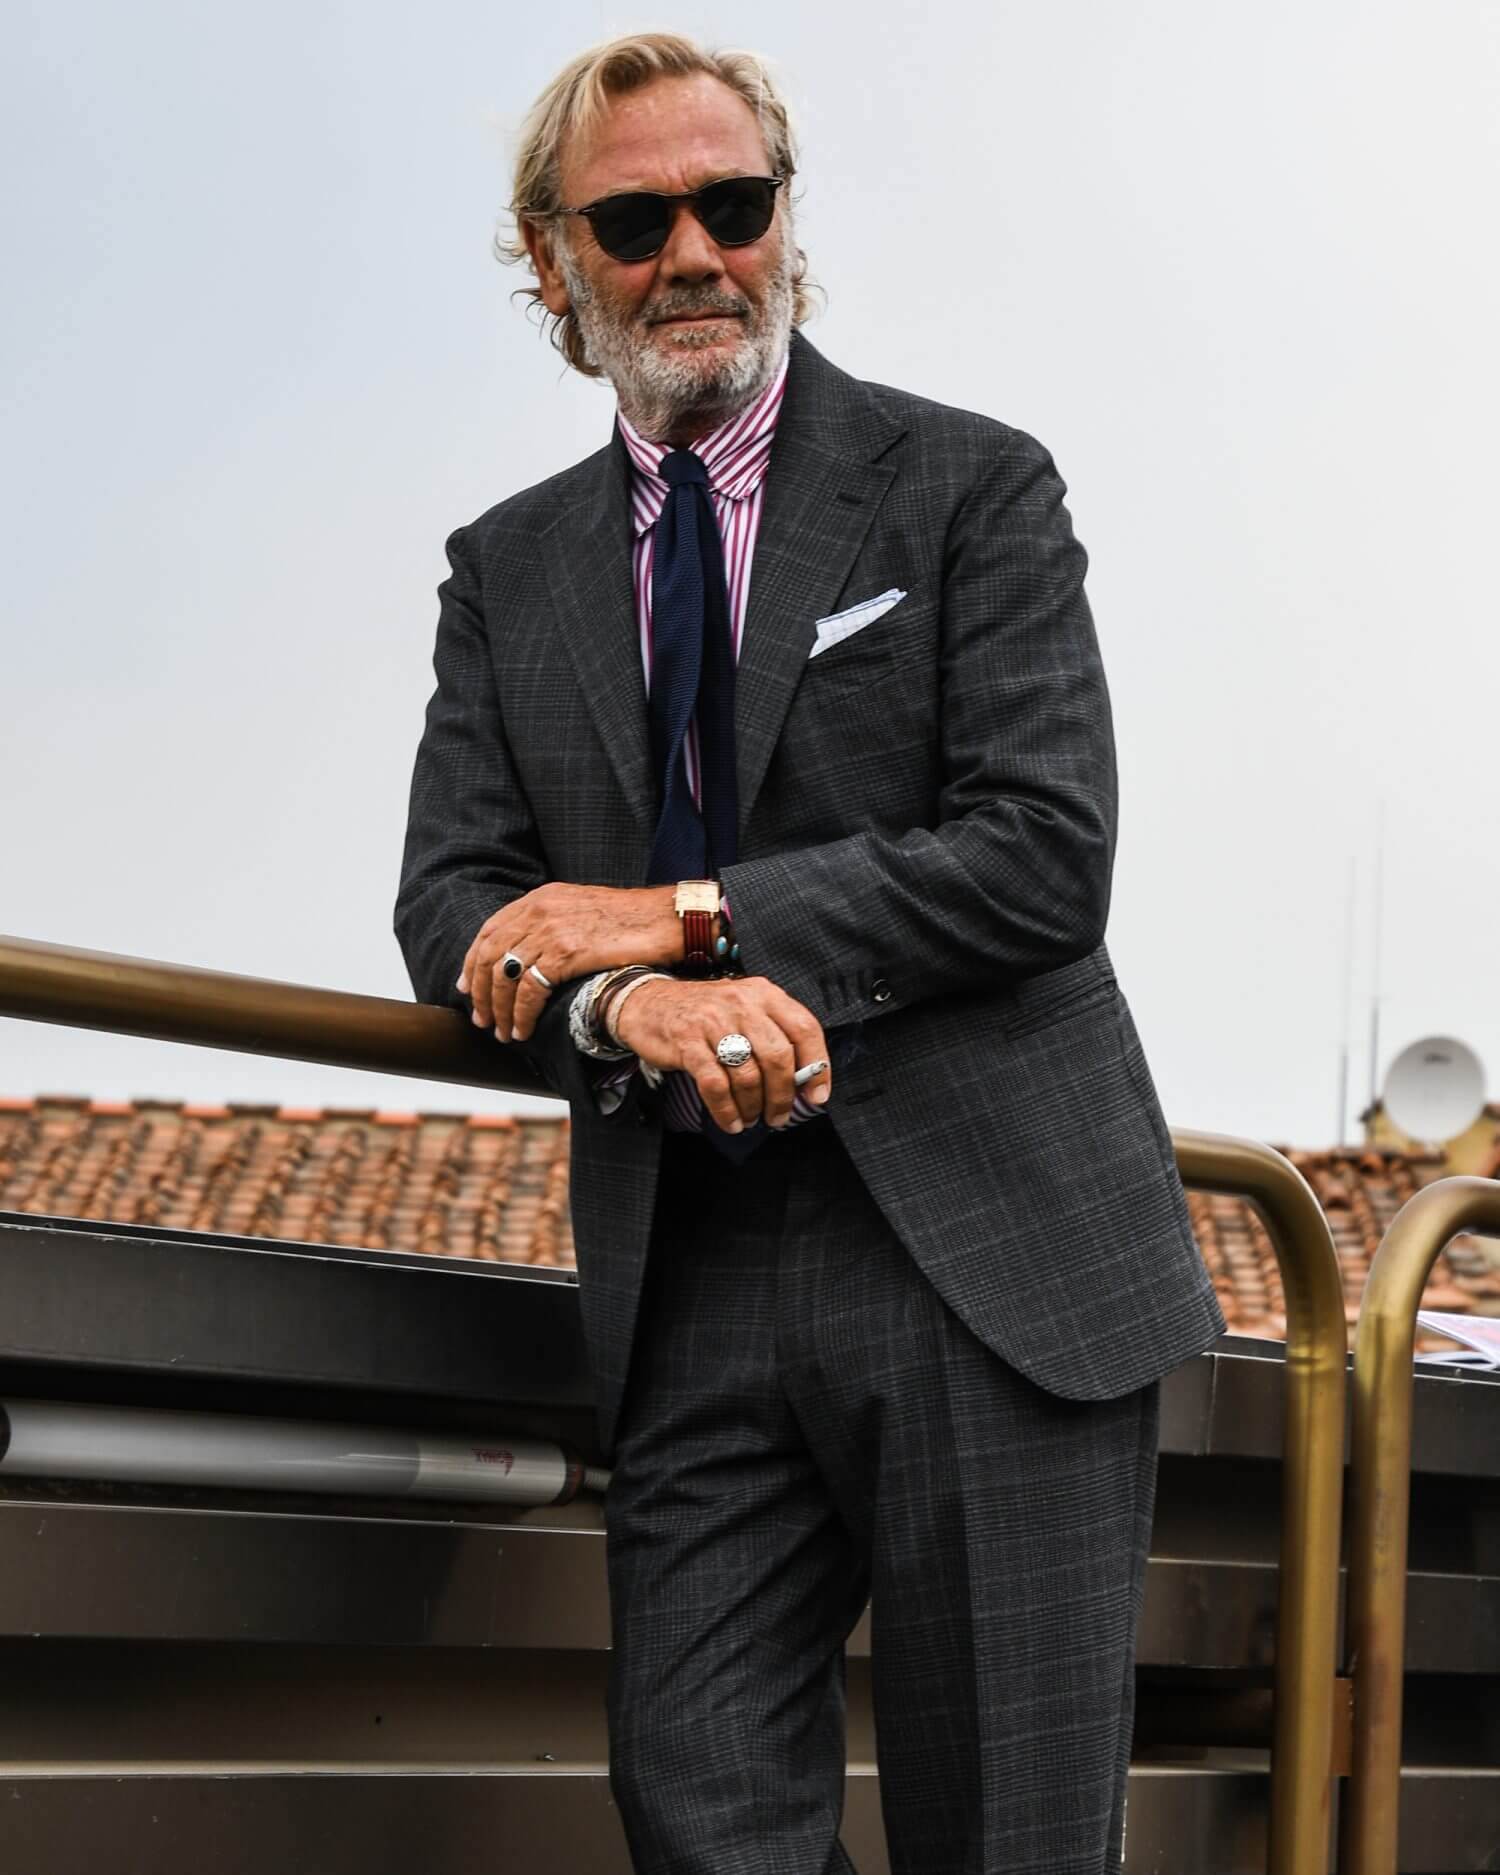 ナポリの イマ を体現するブランド ティト アレグレット Tito Allegretto の魅力に迫る メンズファッションメディア Iicfiicf 男前研究所